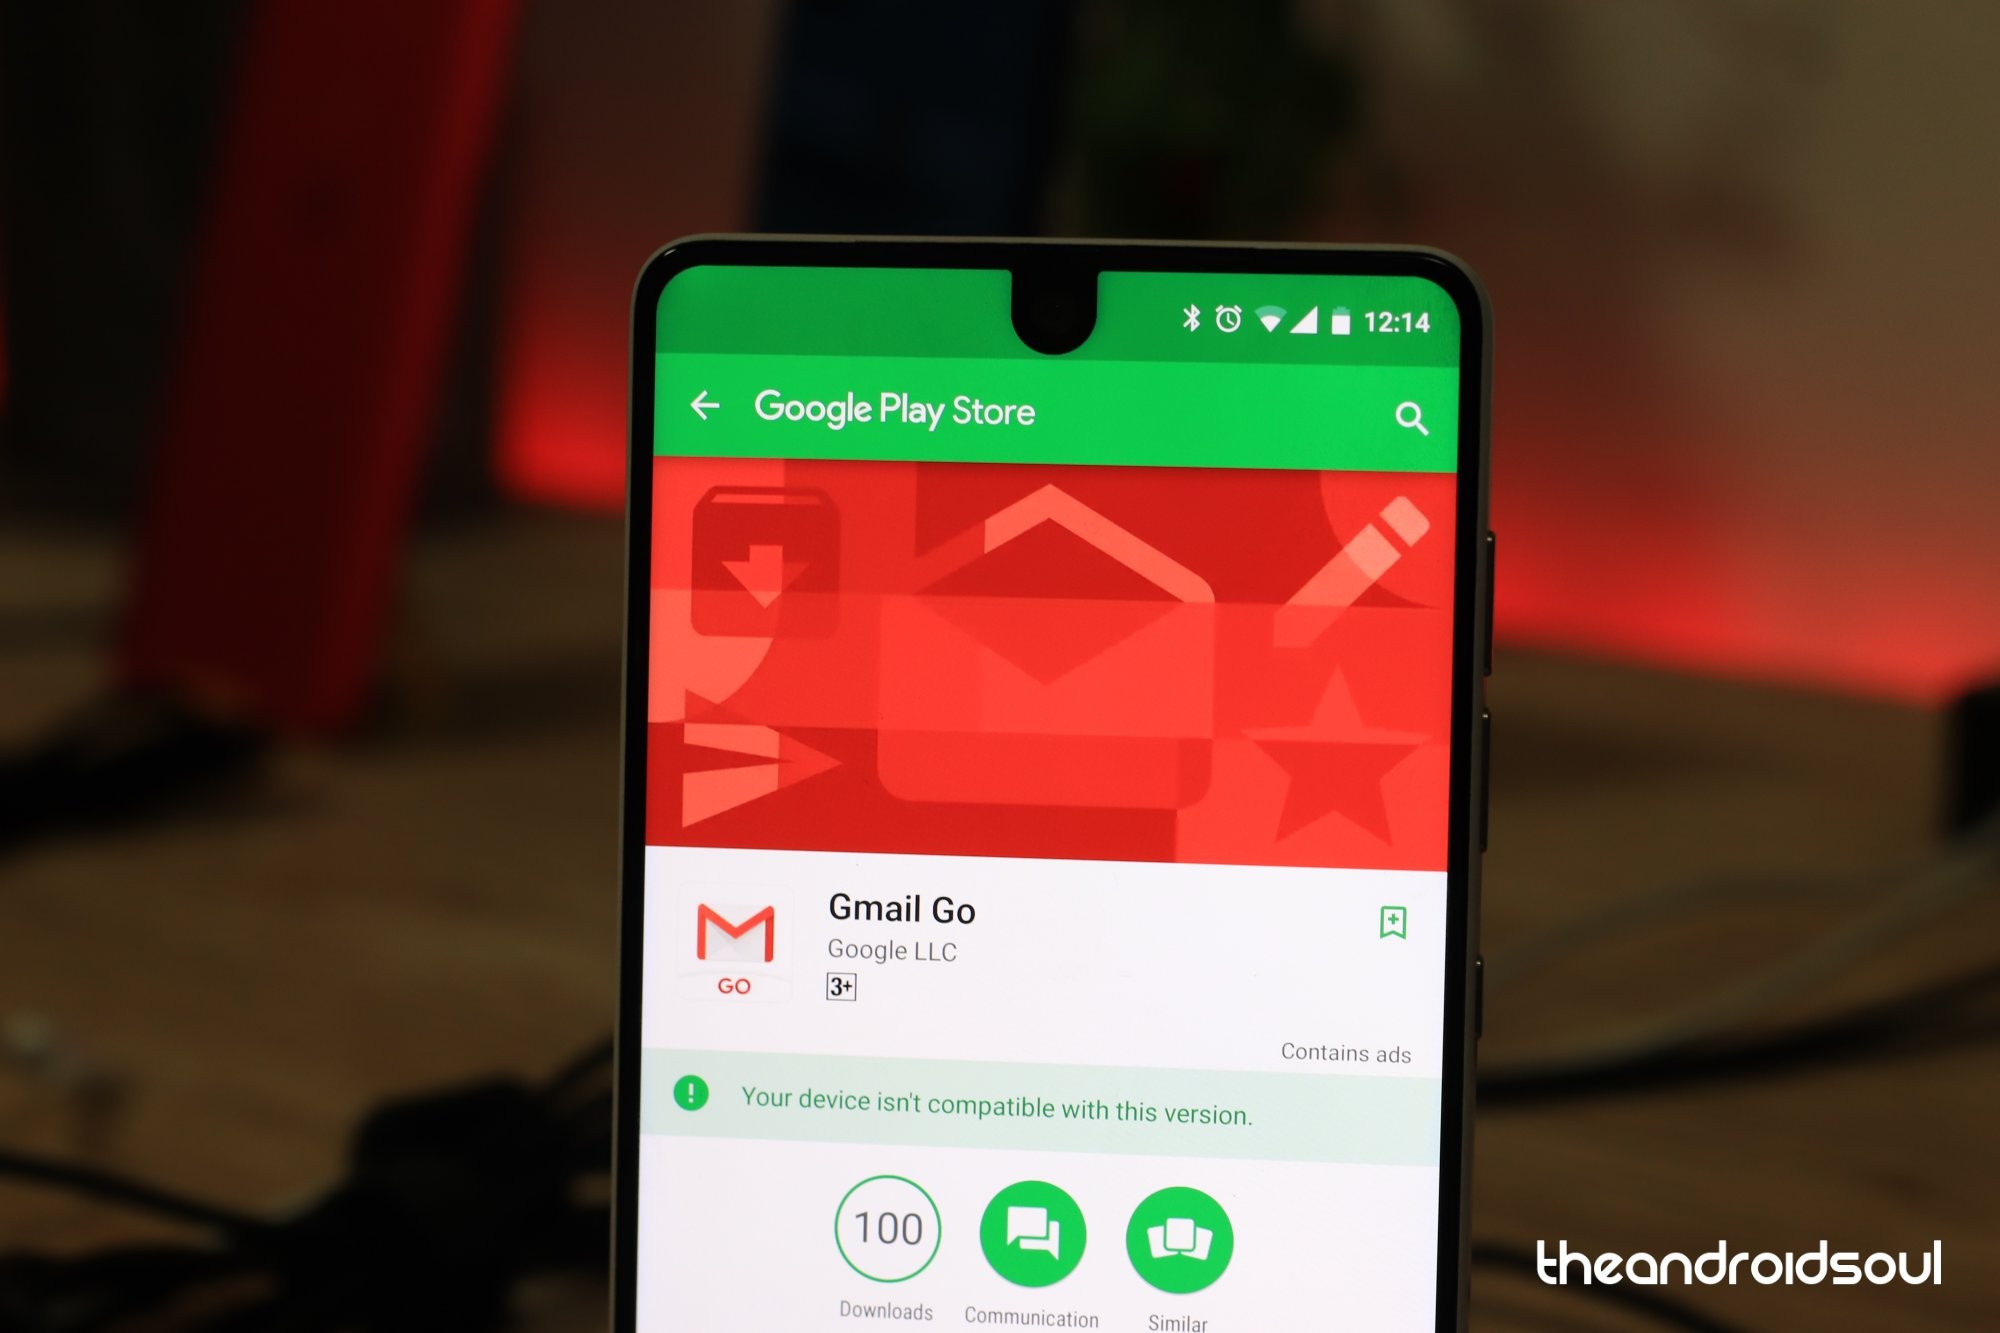 La aplicación Gmail Go se activa en Play Store